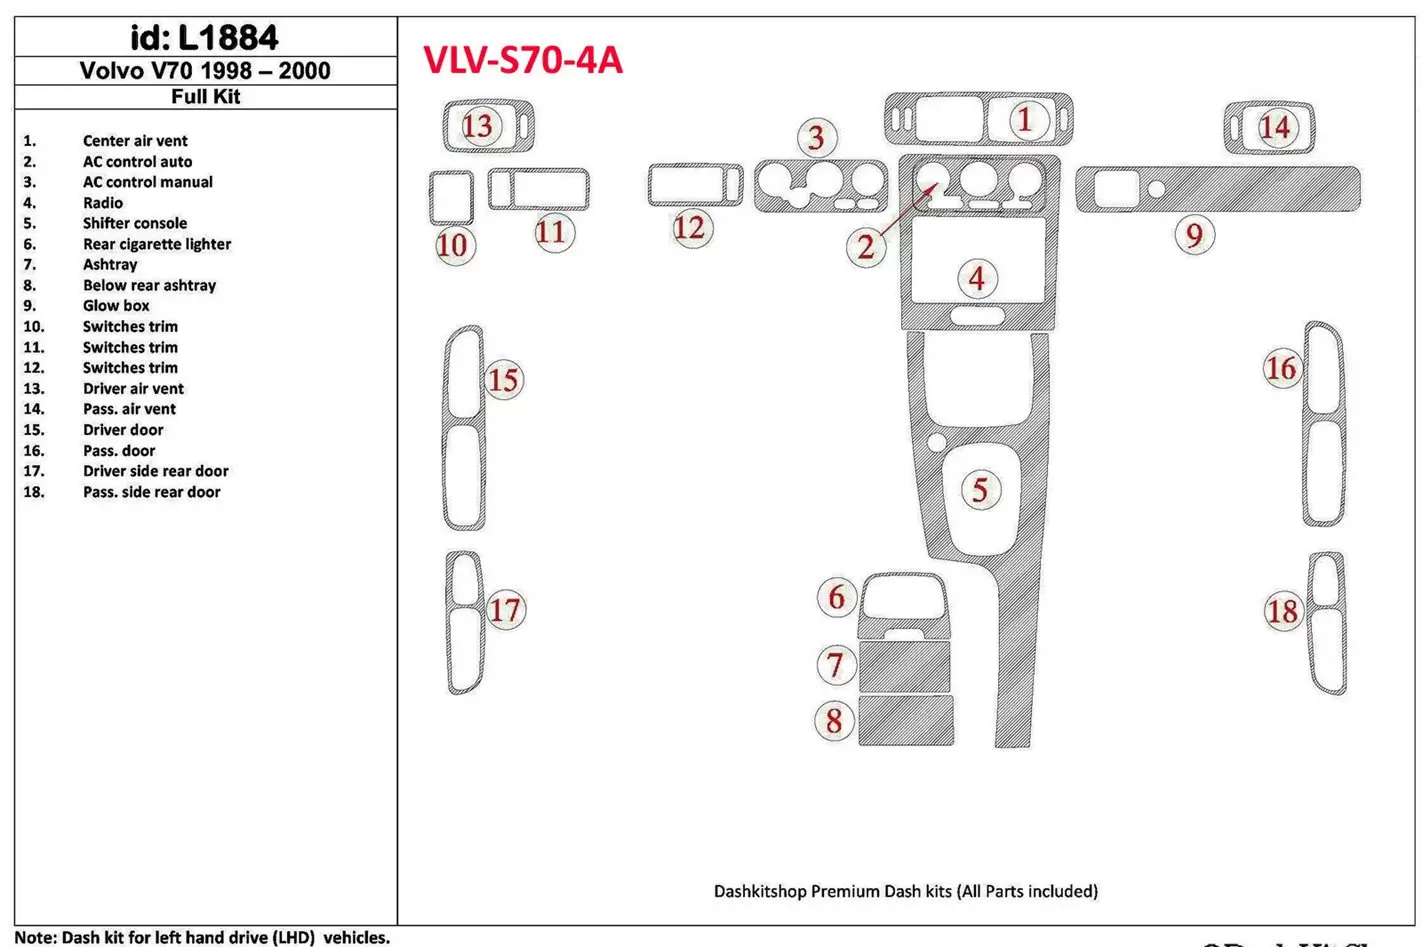 Volvo S70 1998-2000 Ensemble Complet, 18 Parts set BD Kit la décoration du tableau de bord - 1 - habillage decor de tableau de b